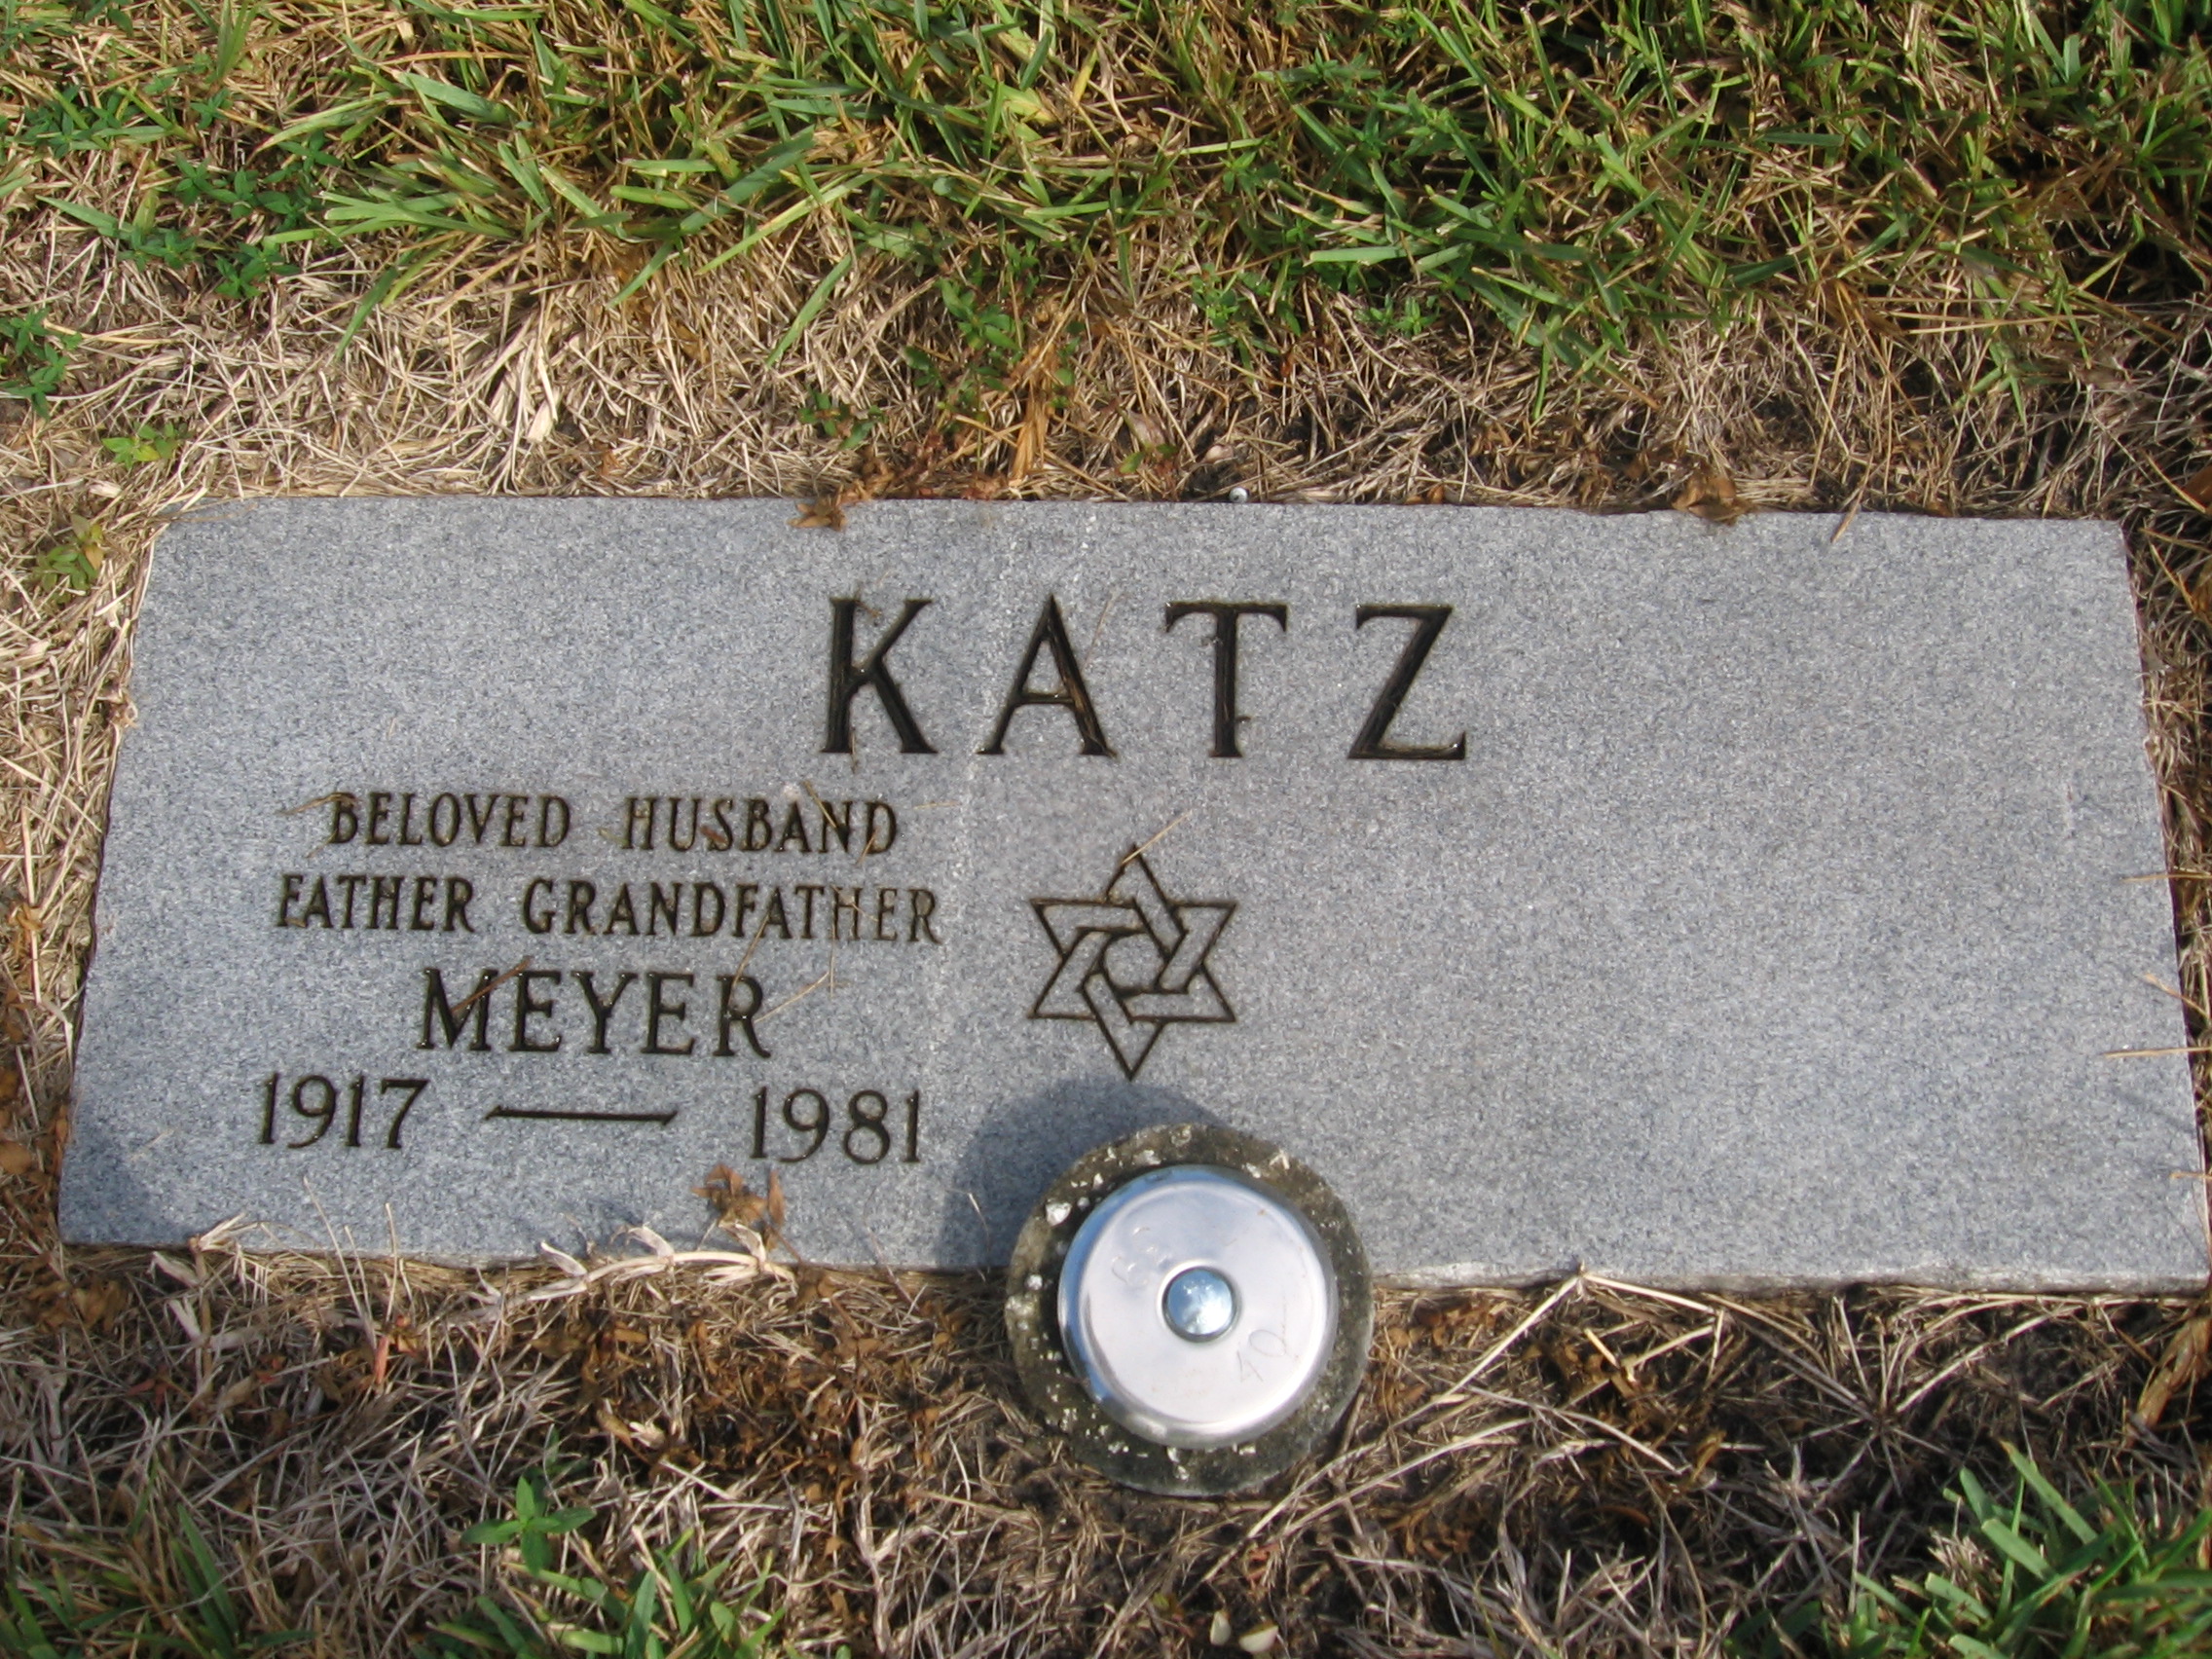 Meyer Katz